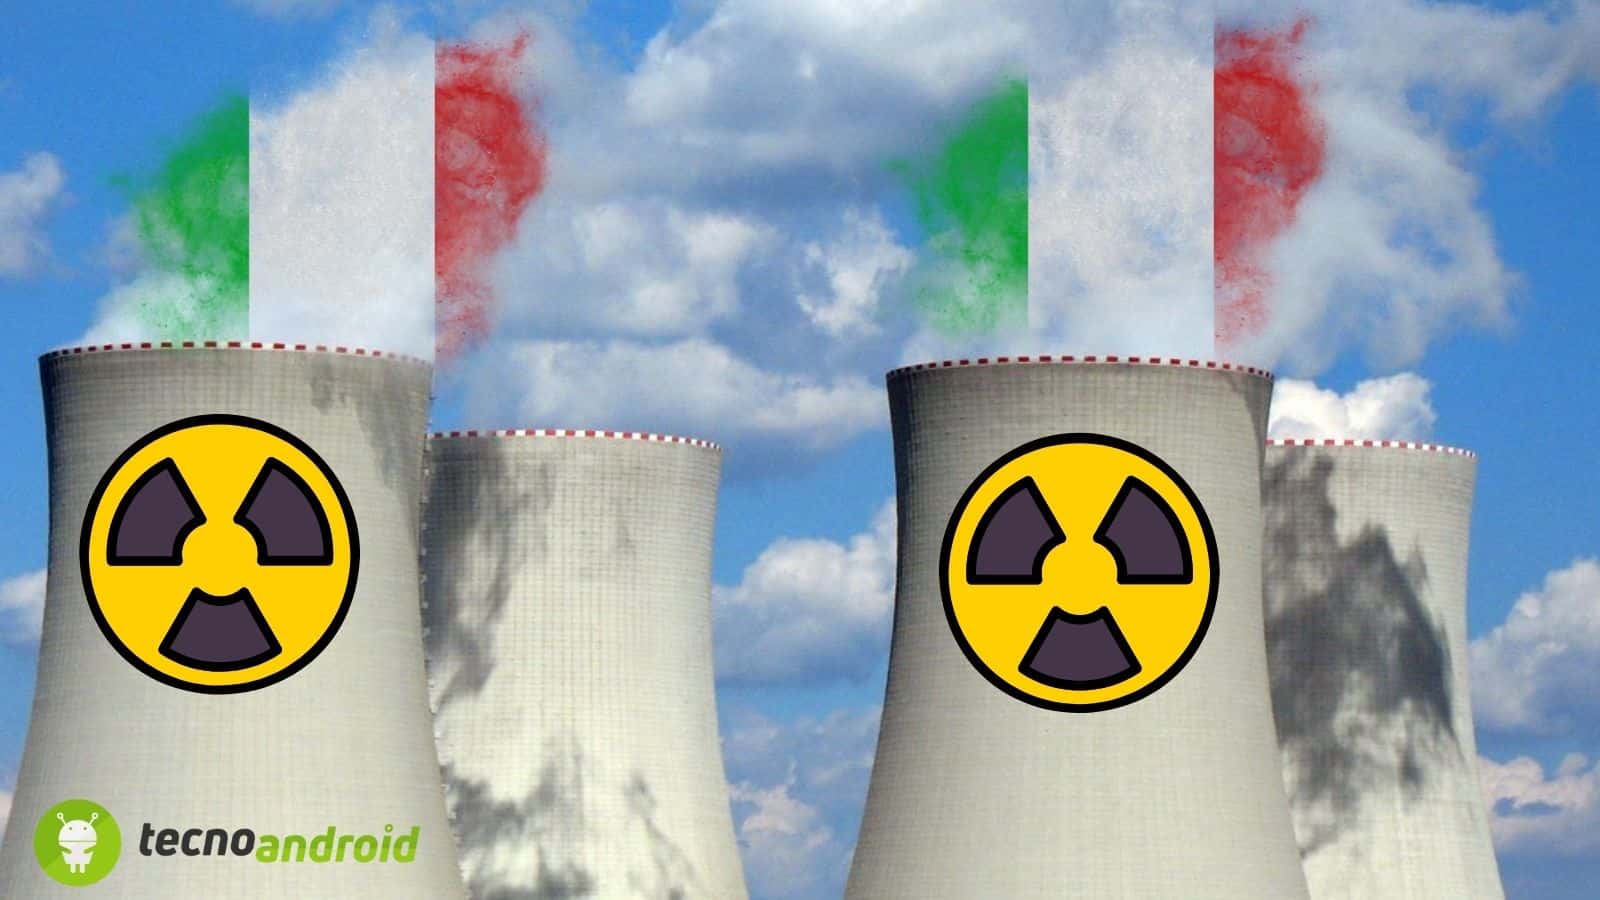 Nucleare: il ritorno in Italia per contrastare il cambiamento climatico